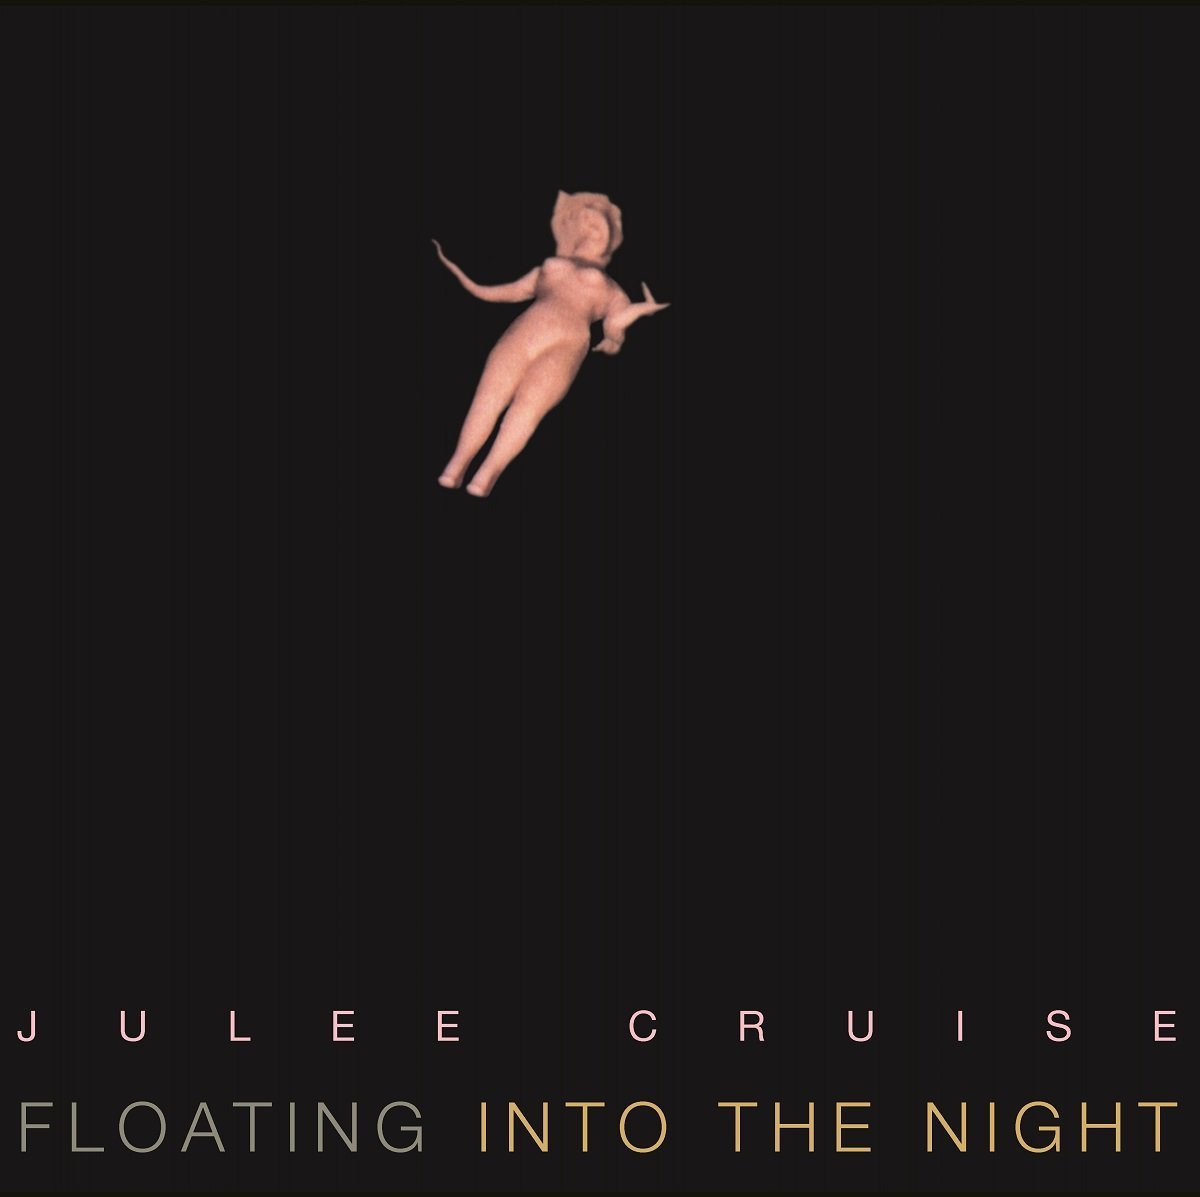 Vinile Julee Cruise - Floating Into The Night NUOVO SIGILLATO, EDIZIONE DEL 05/02/2015 SUBITO DISPONIBILE